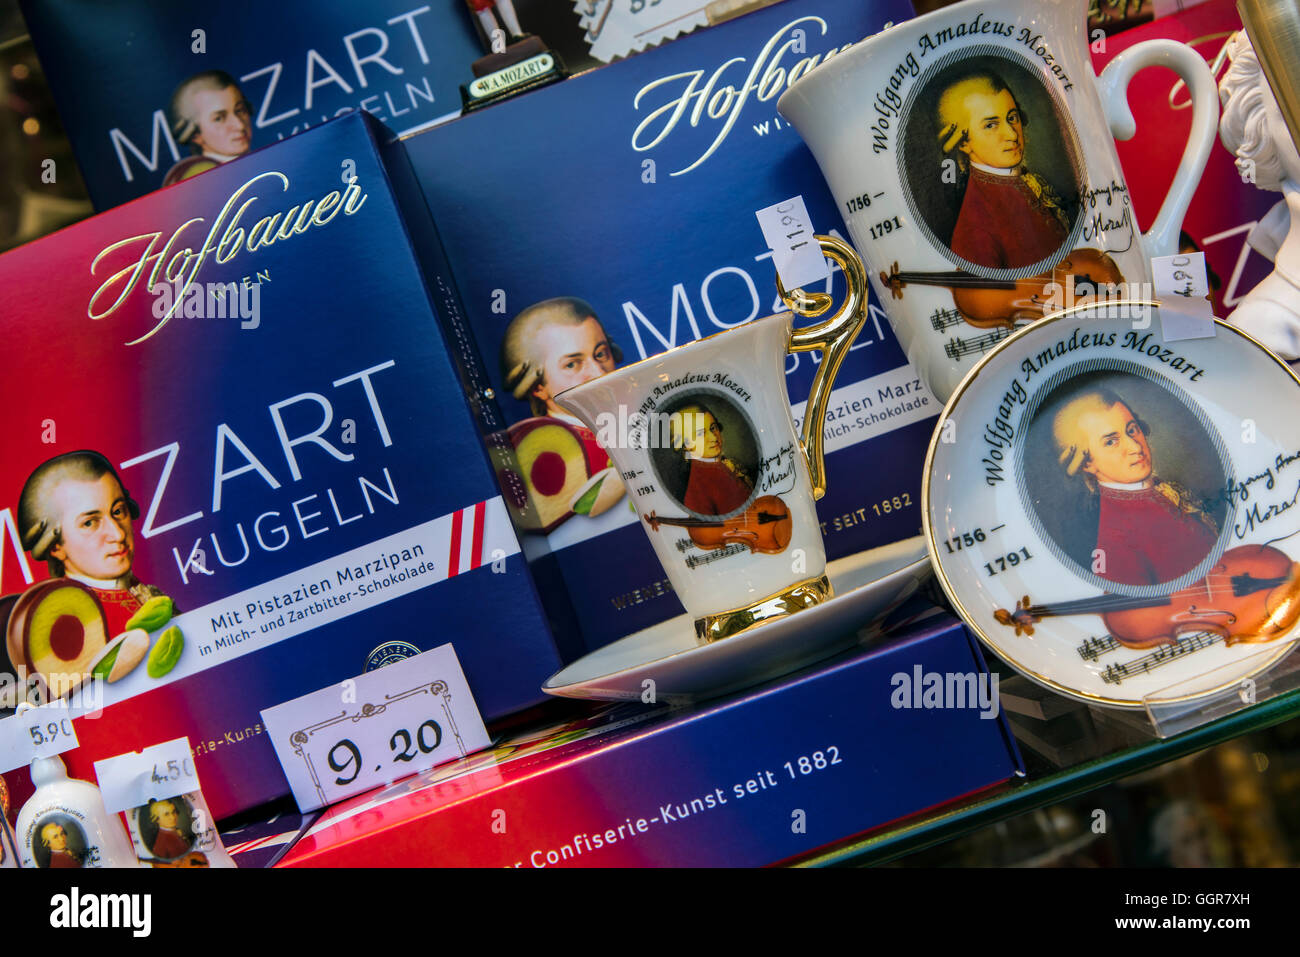 La célèbre Mozart Kugeln boules au chocolat en vente dans une pâtisserie viennois, Vienne, Autriche Banque D'Images